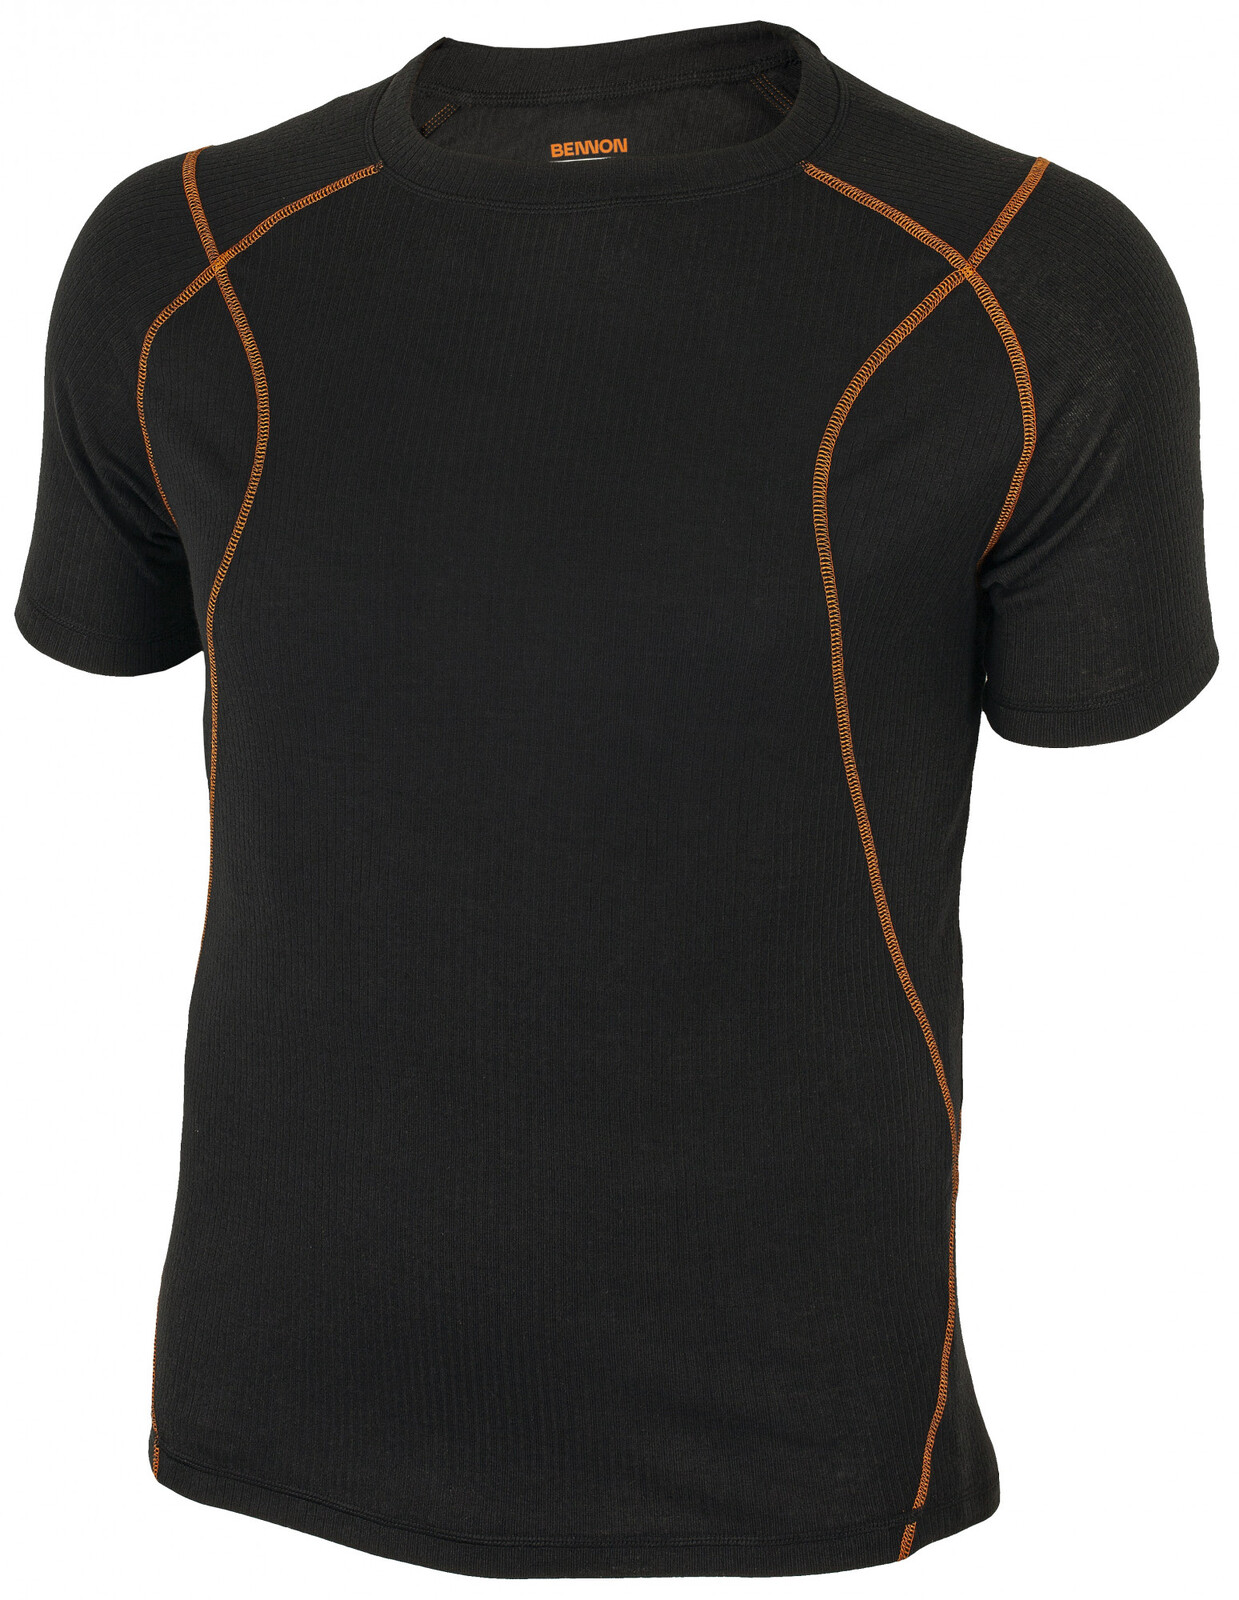 Pánske funkčné termo tričko s krátkym rukávom Bennon Artemios - veľkosť: M, farba: čierna/oranžová